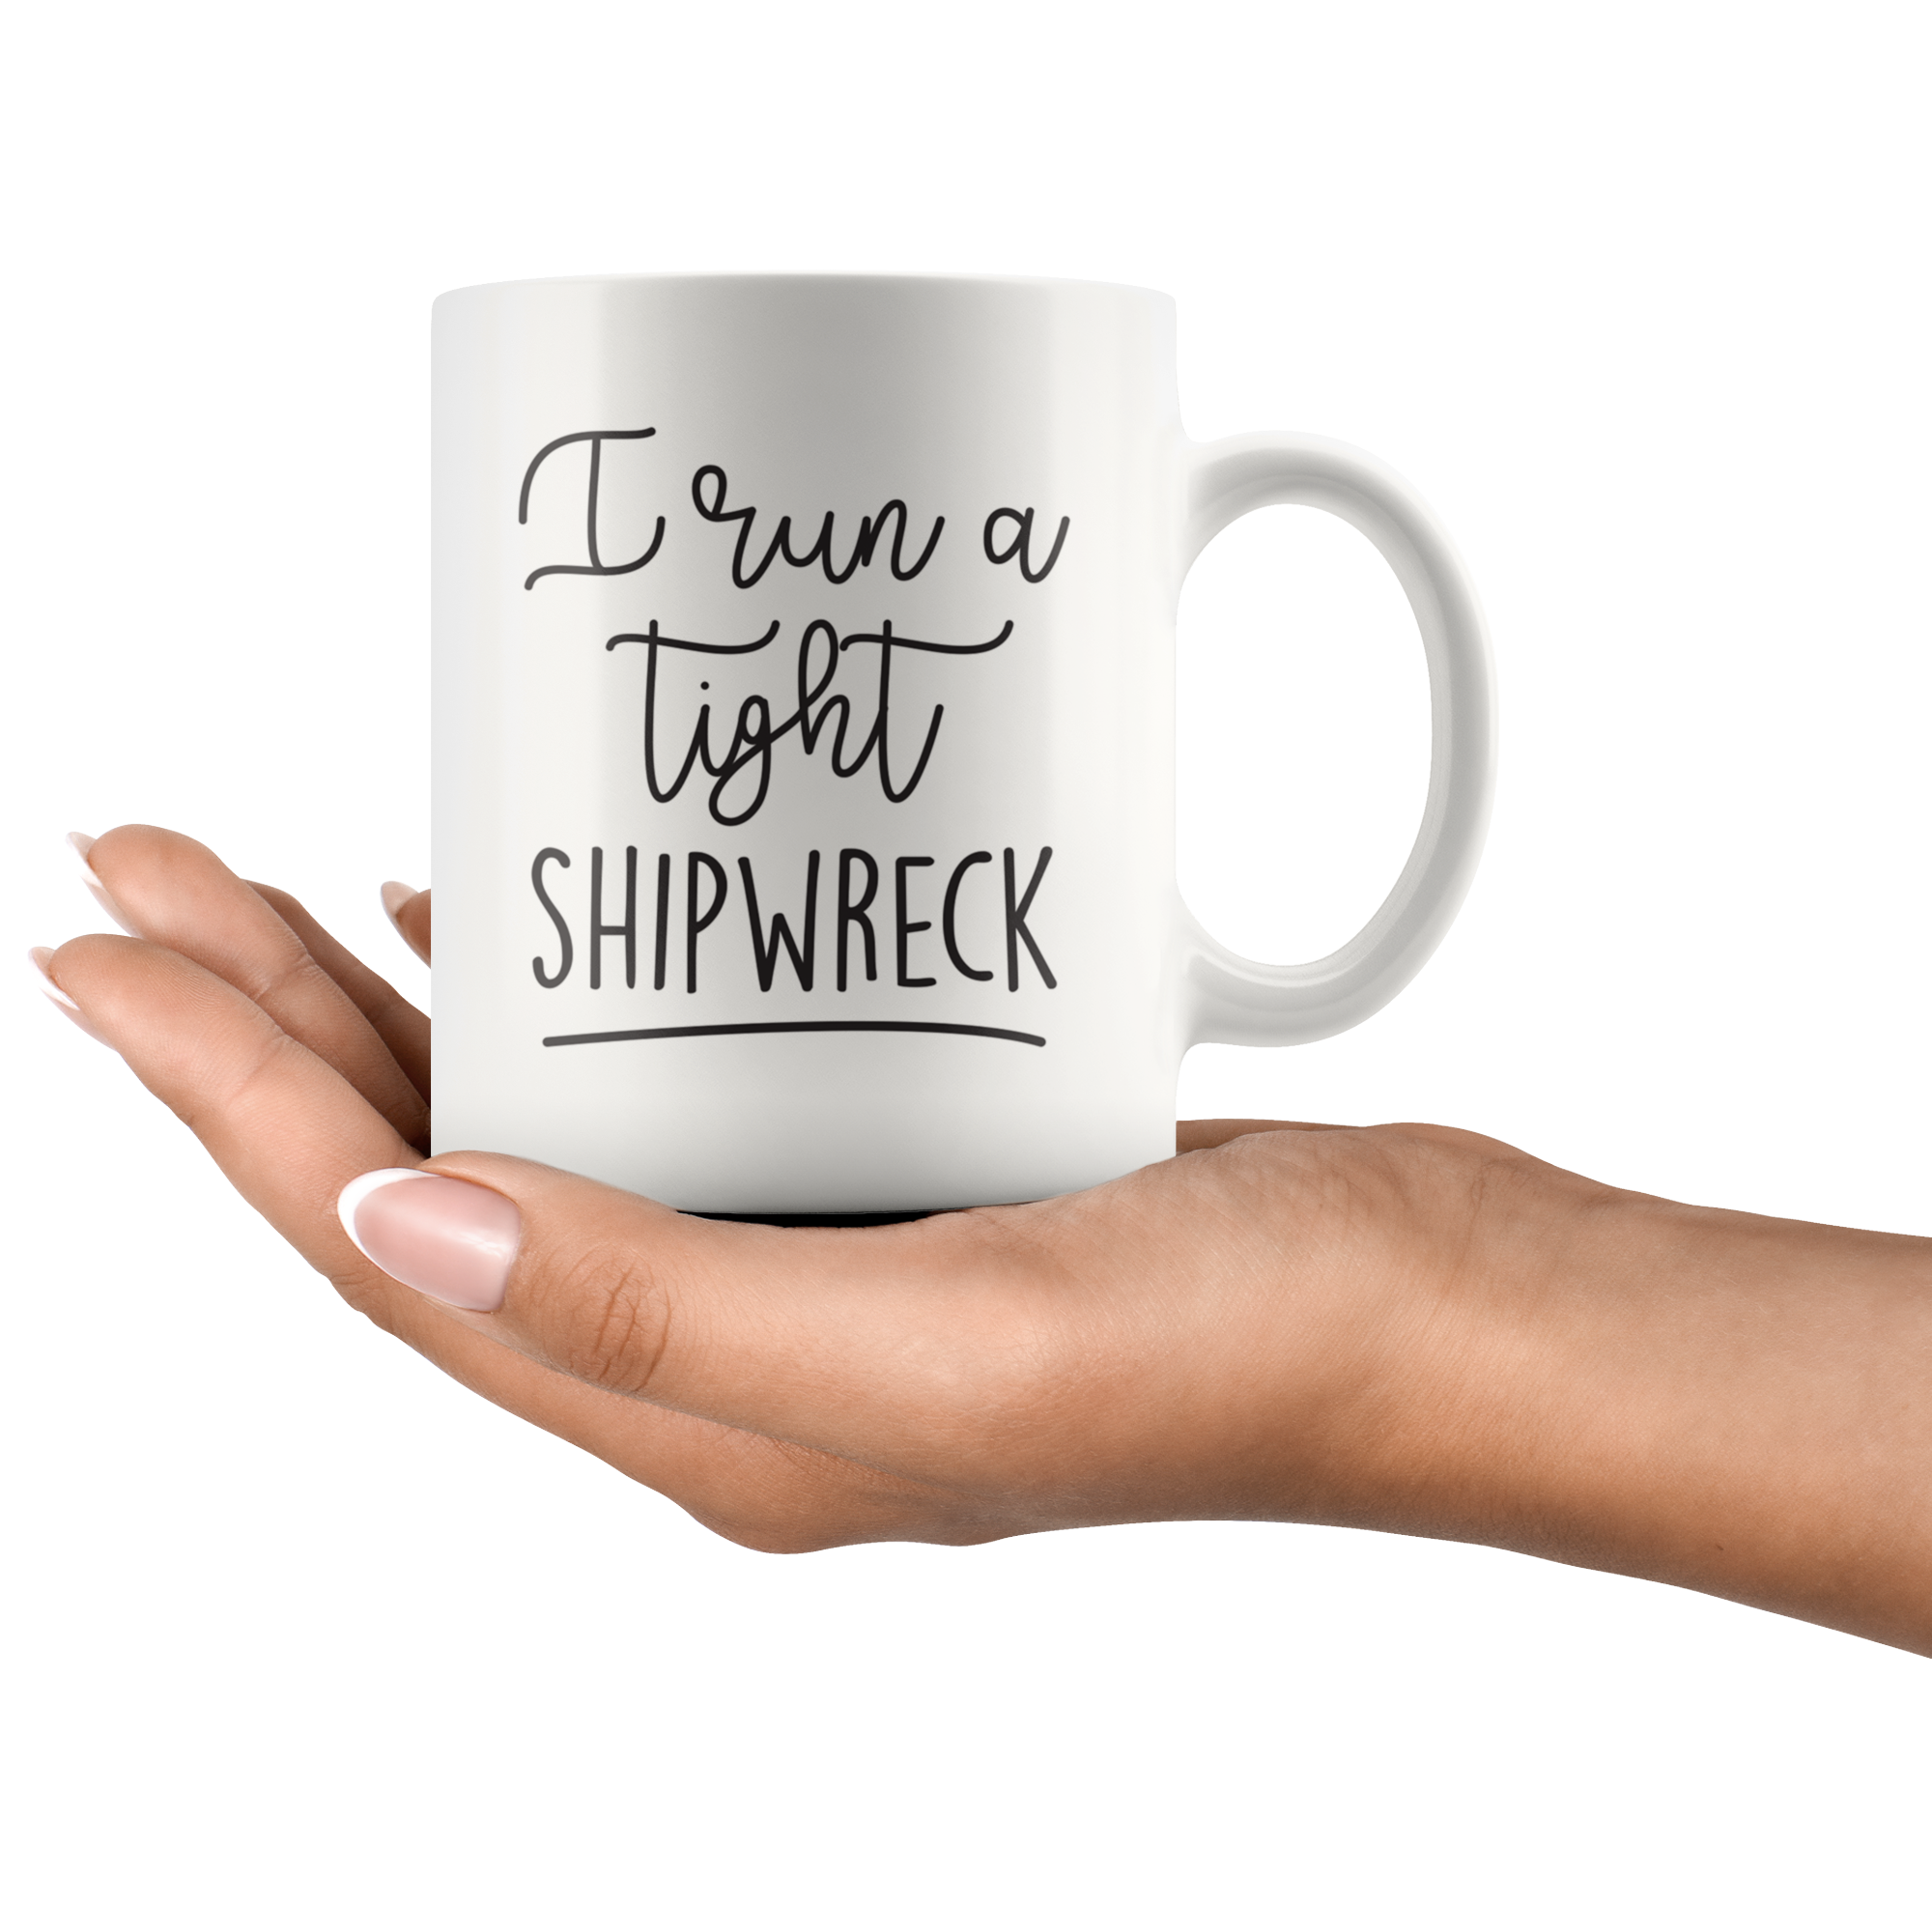 Run A Tight Shipwreck Coffee Mug